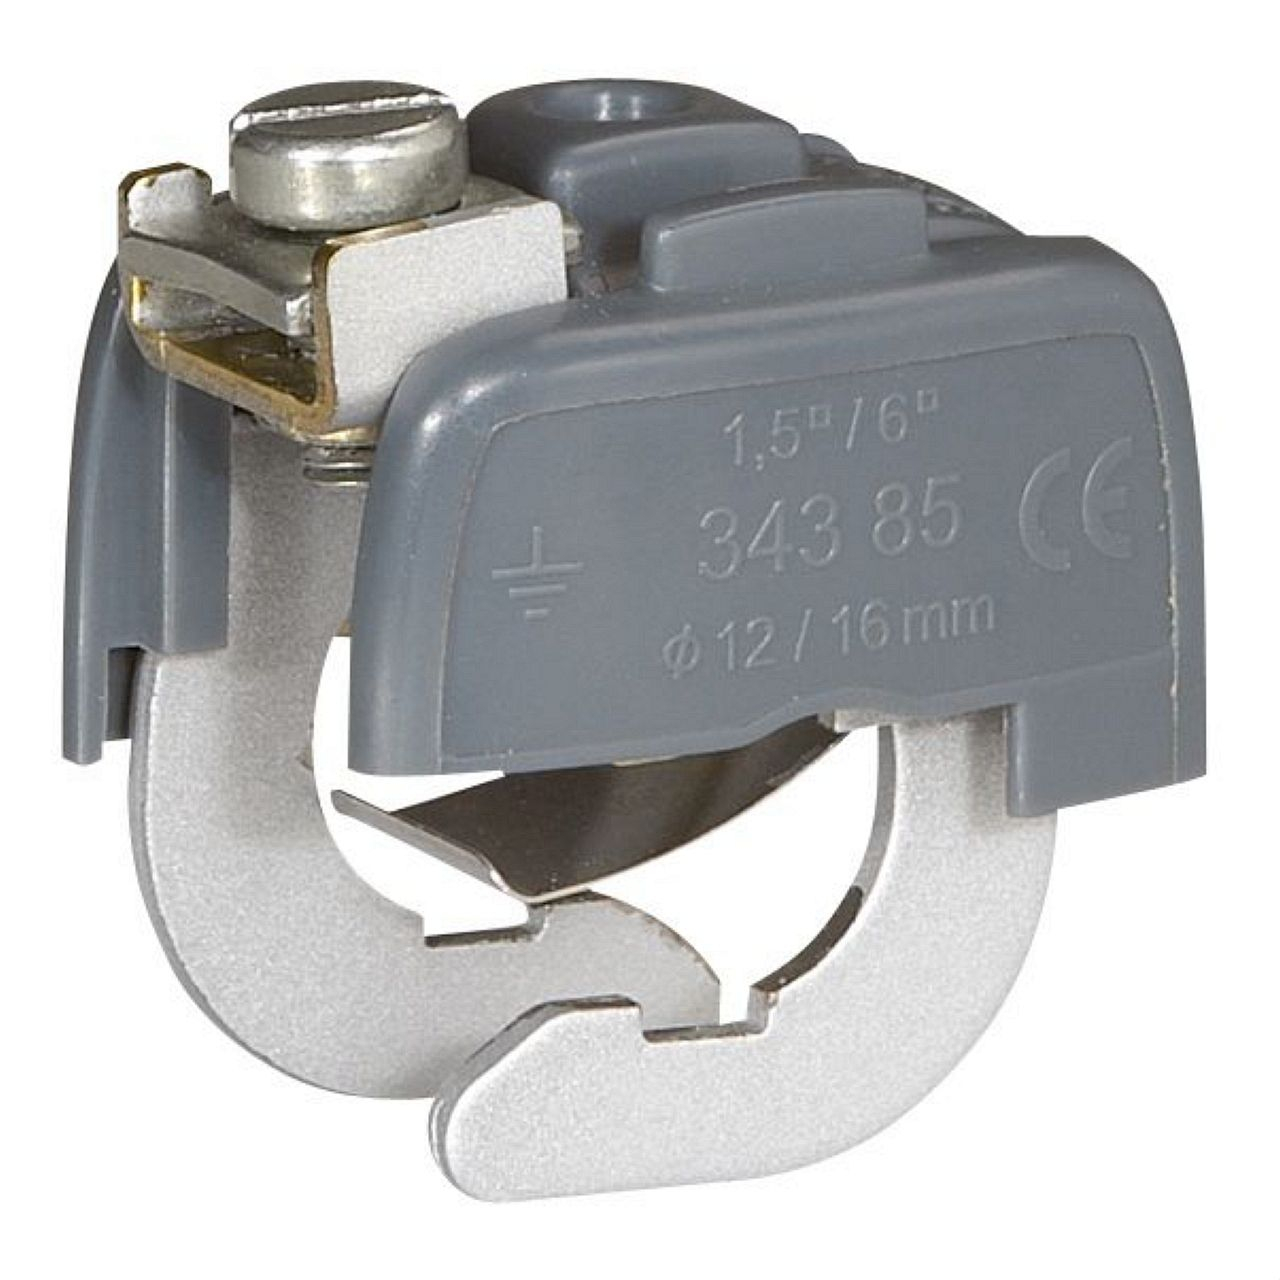 Connecteur de liaison équipotentielle pour canalisation D=12mm mini et D=16mm ma